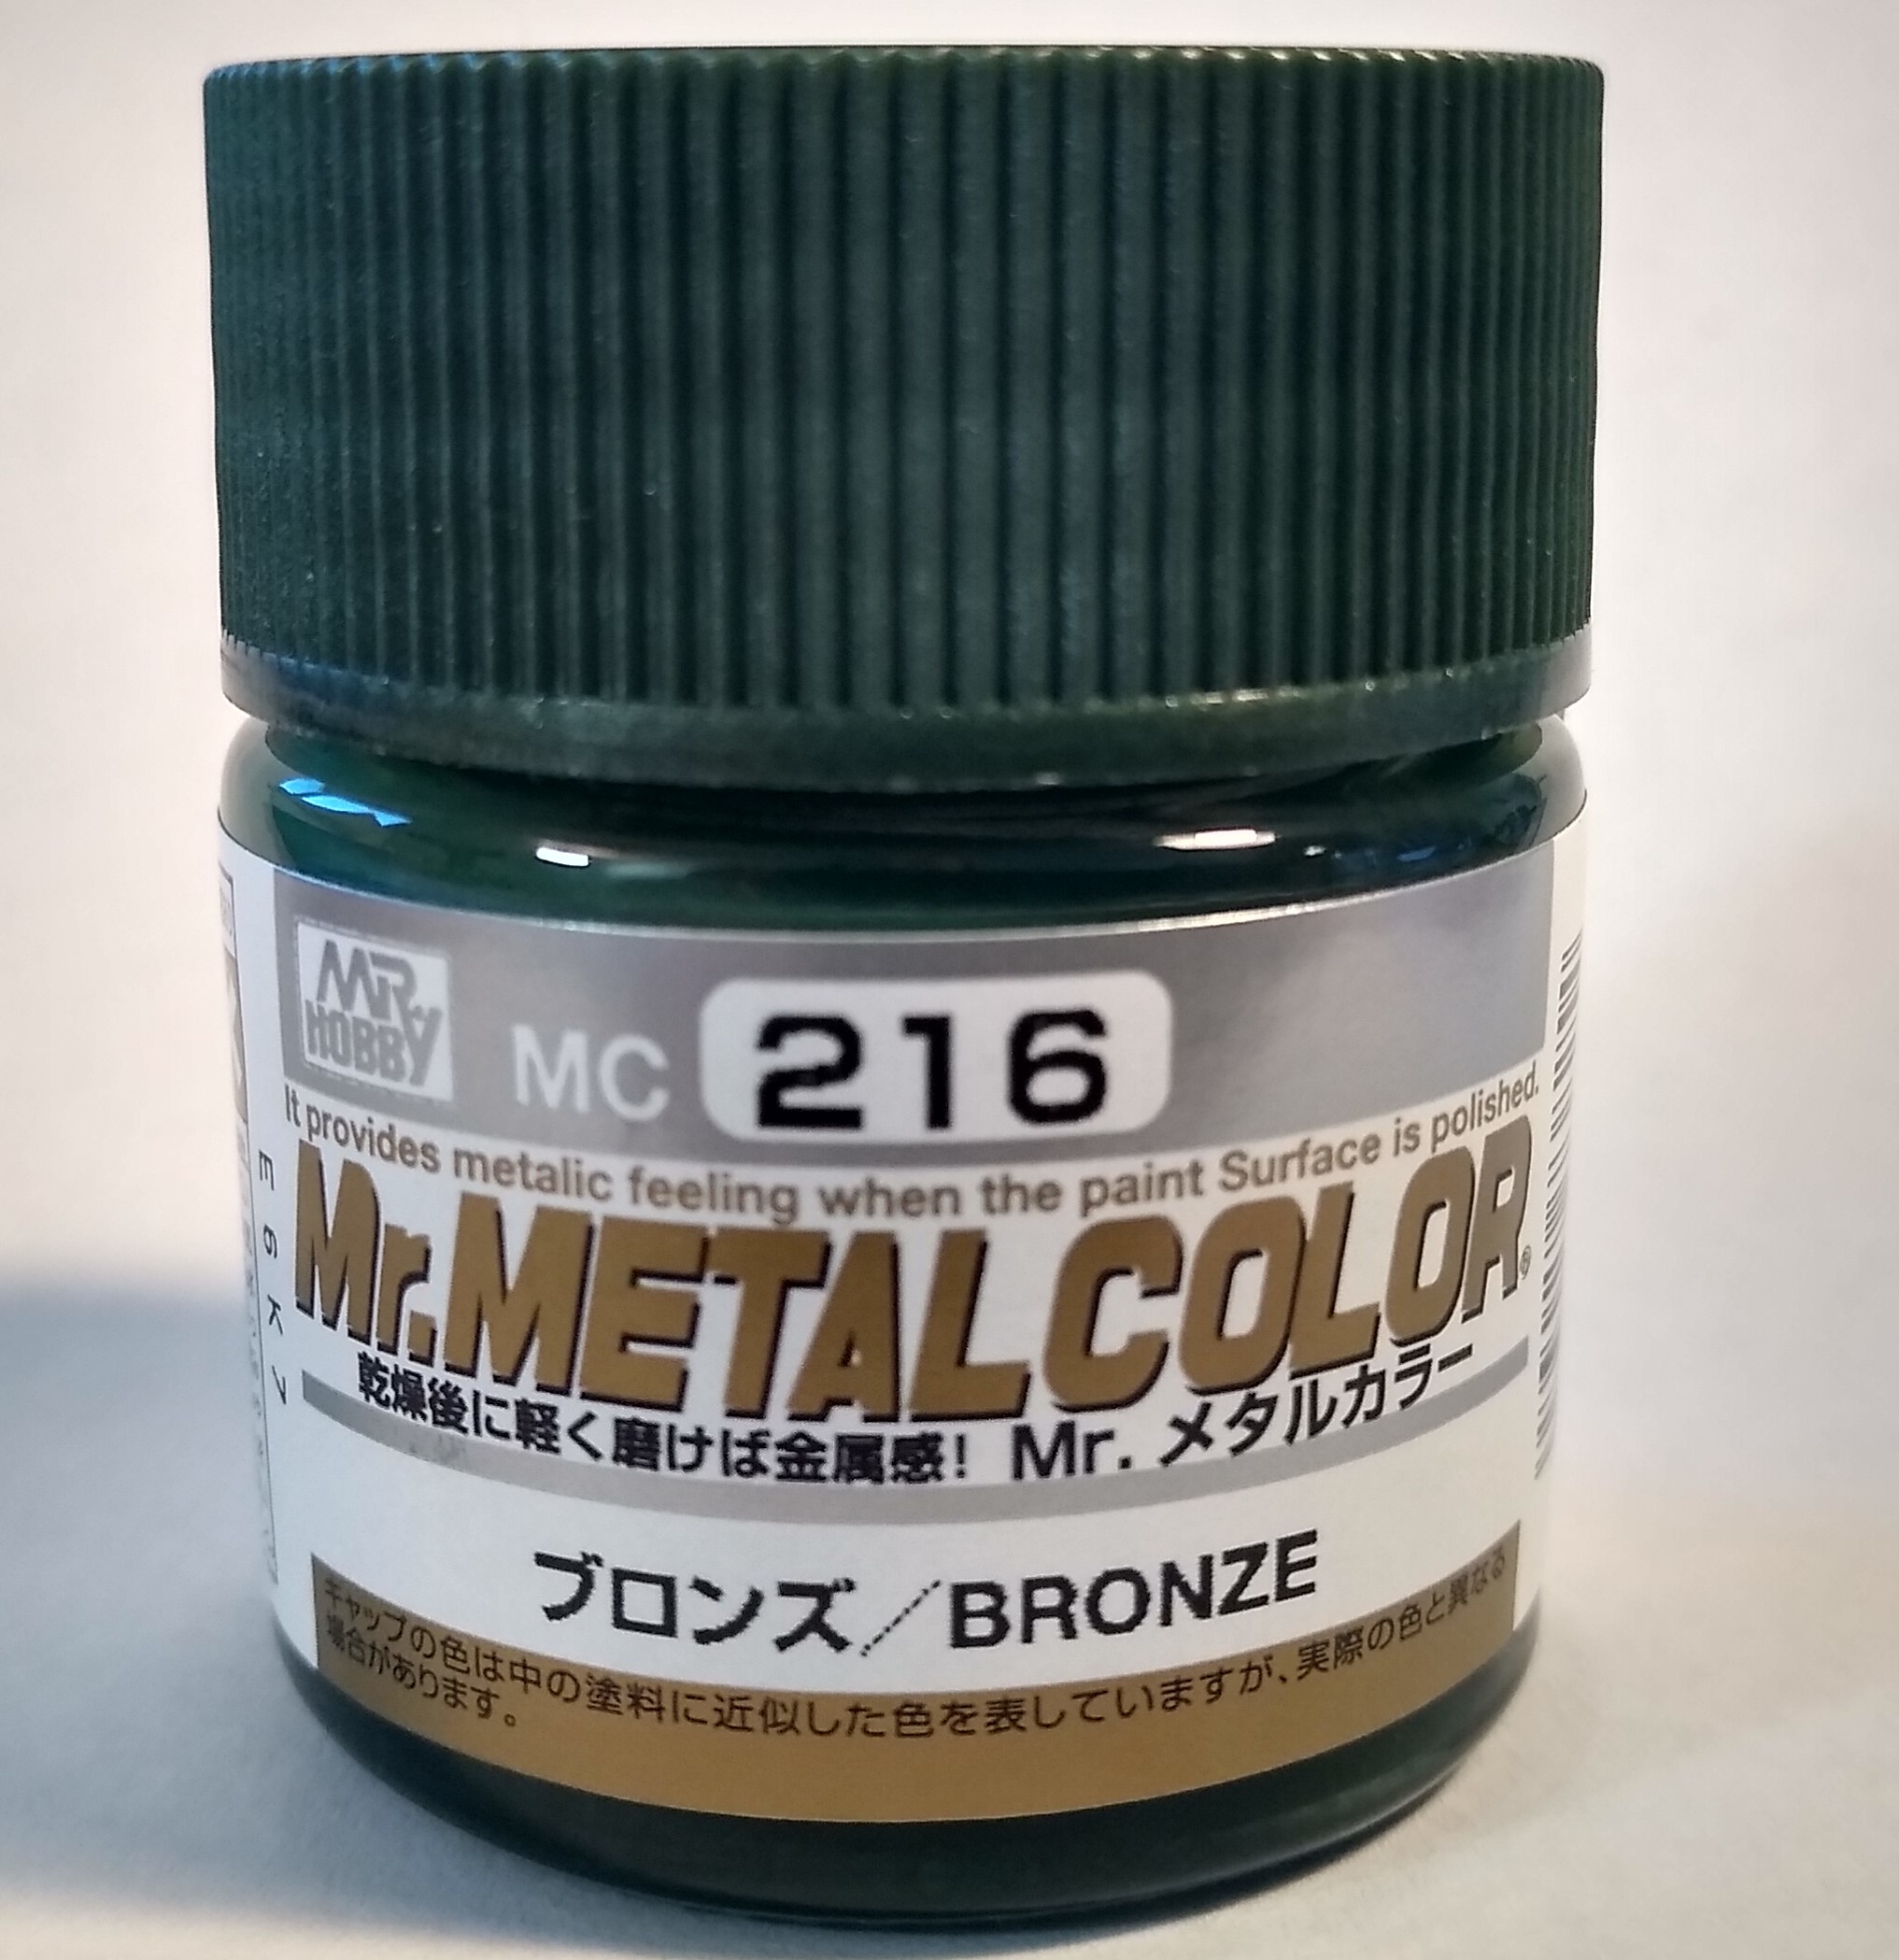 Pot of Mr. Metal Color Bronze Paint